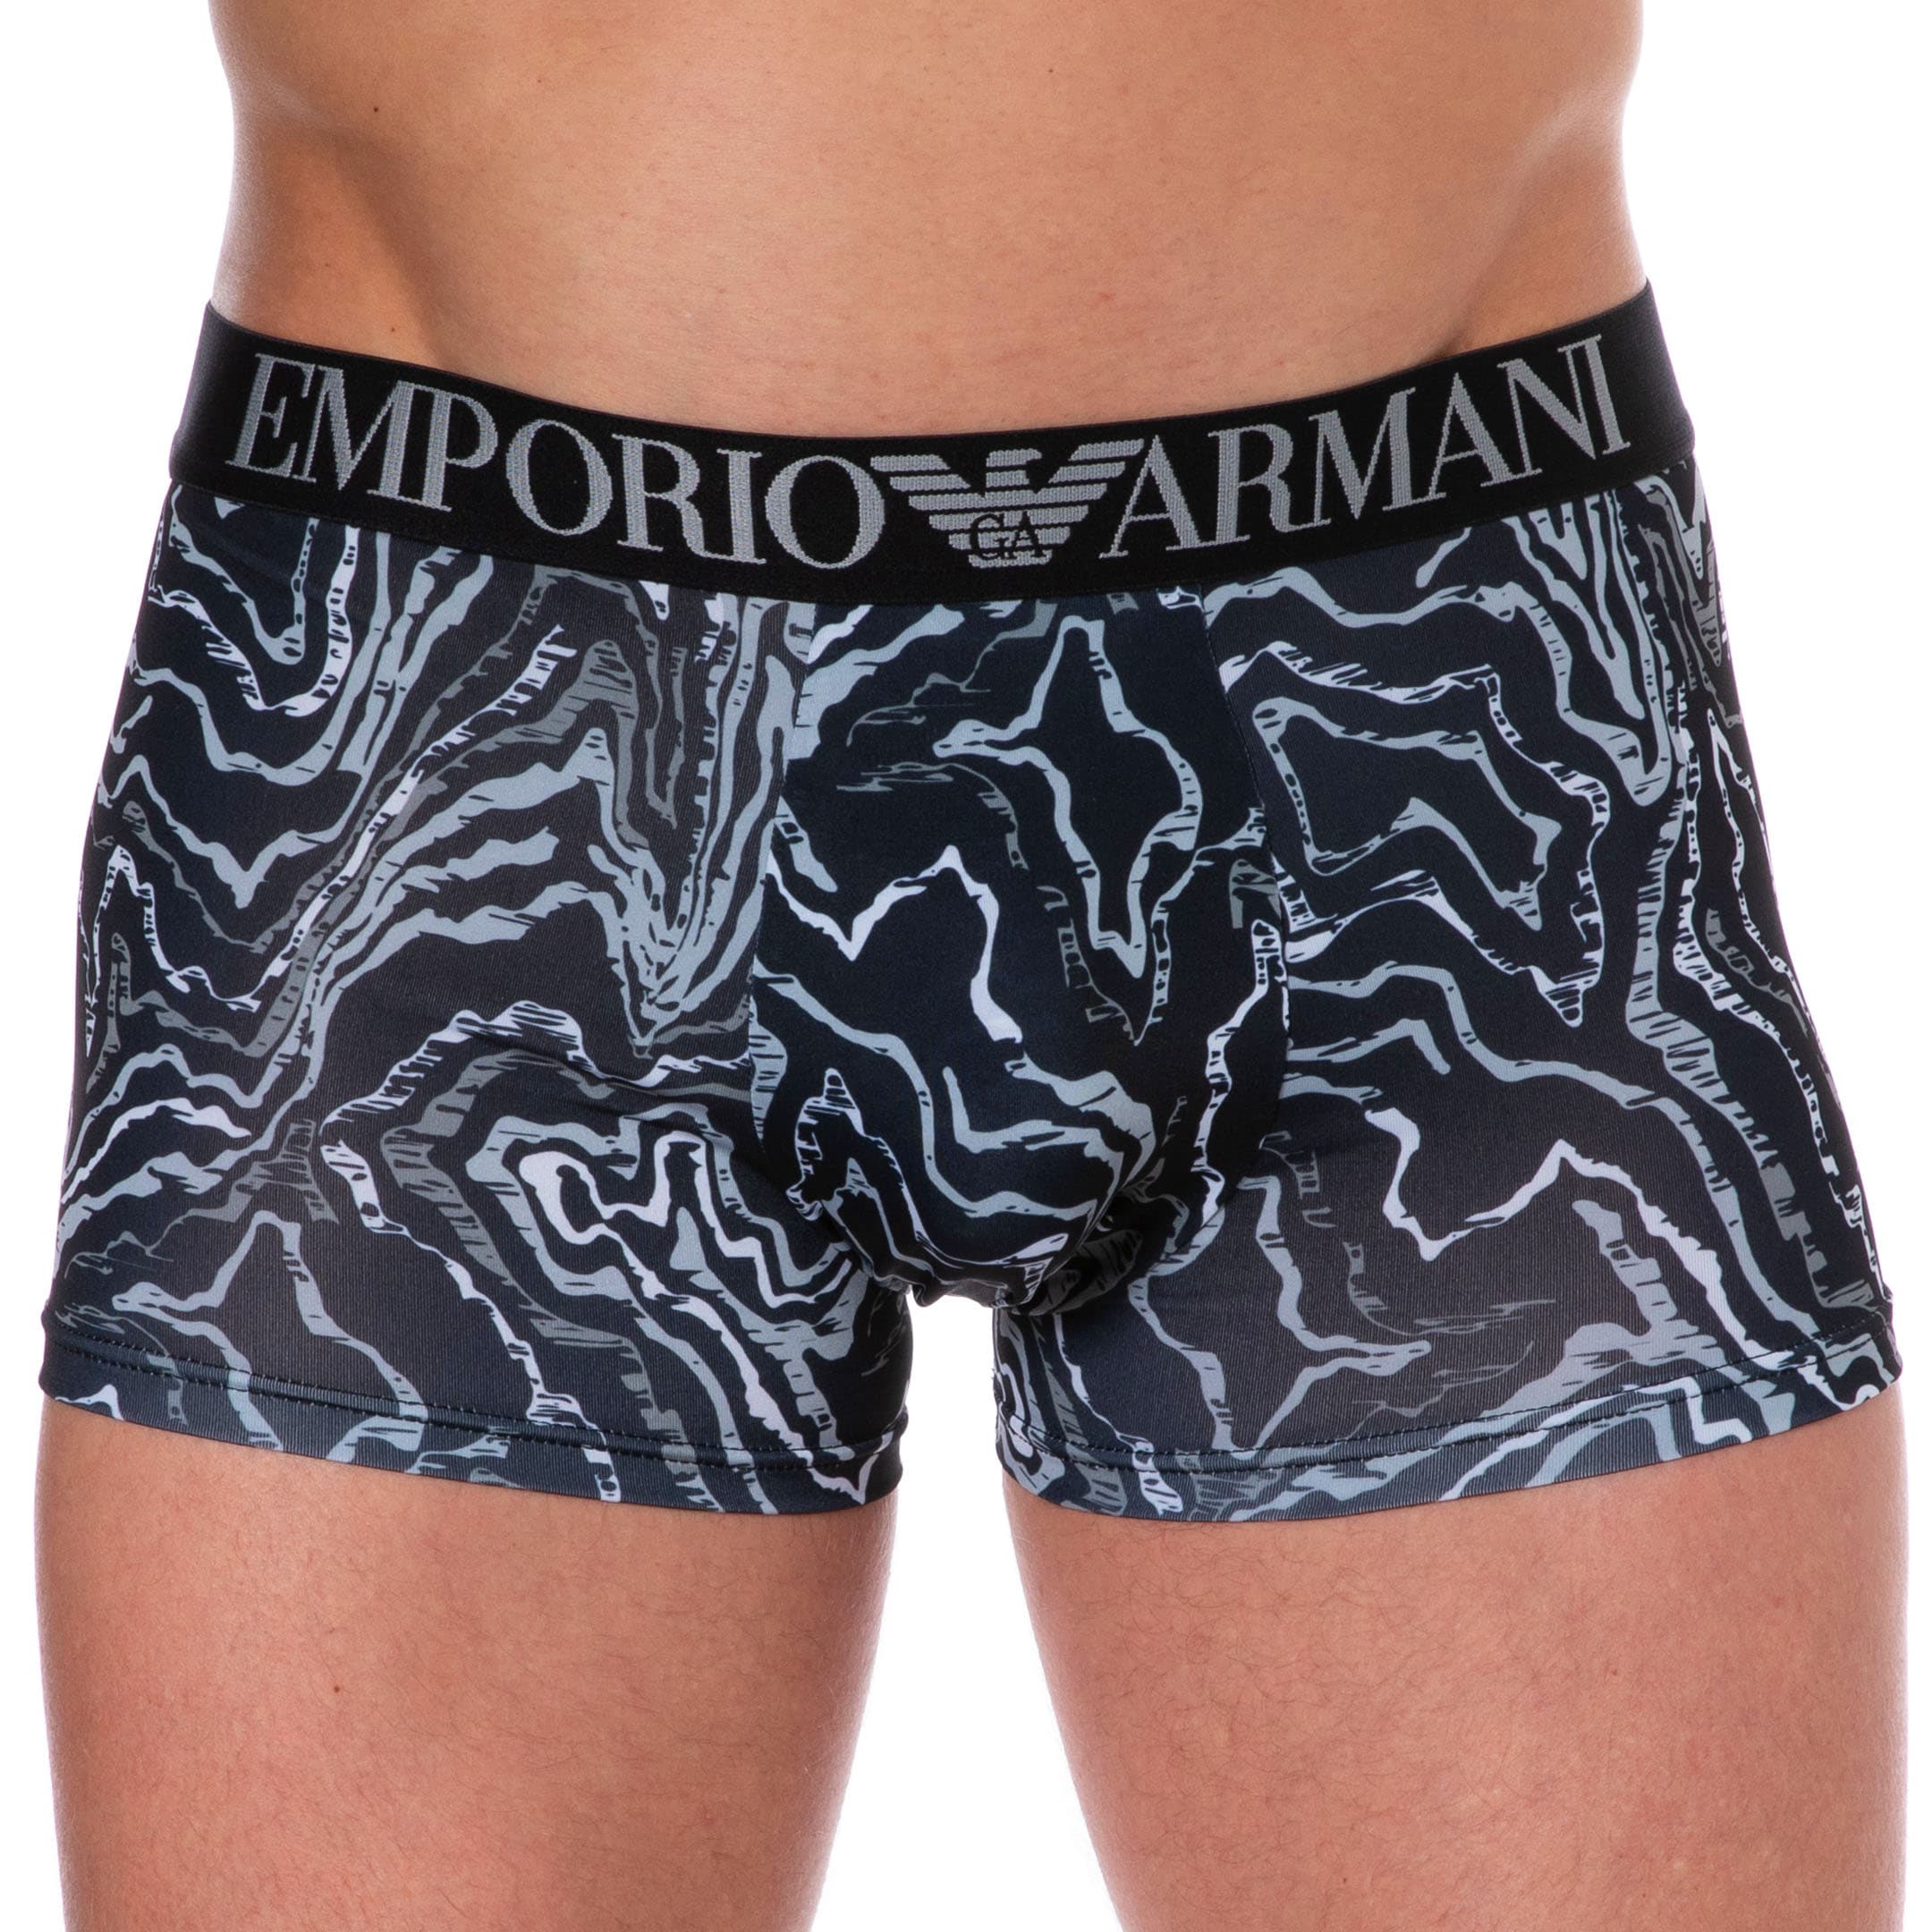 Emporio Armani All Over Printed Microfiber Boxer Briefs - Black